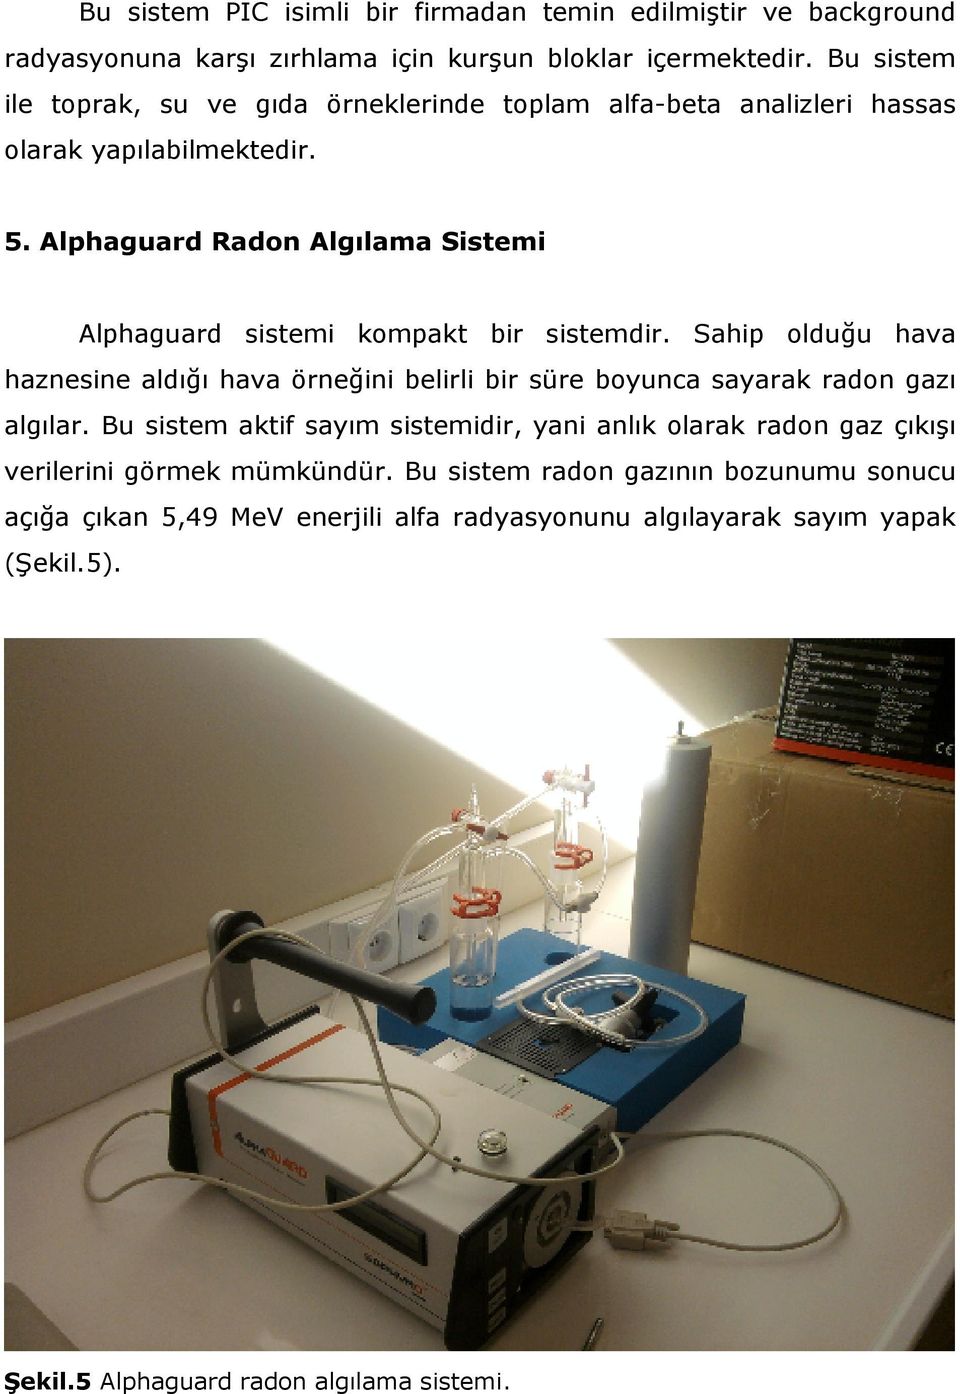 Alphaguard Radon Algılama Sistemi Alphaguard sistemi kompakt bir sistemdir.